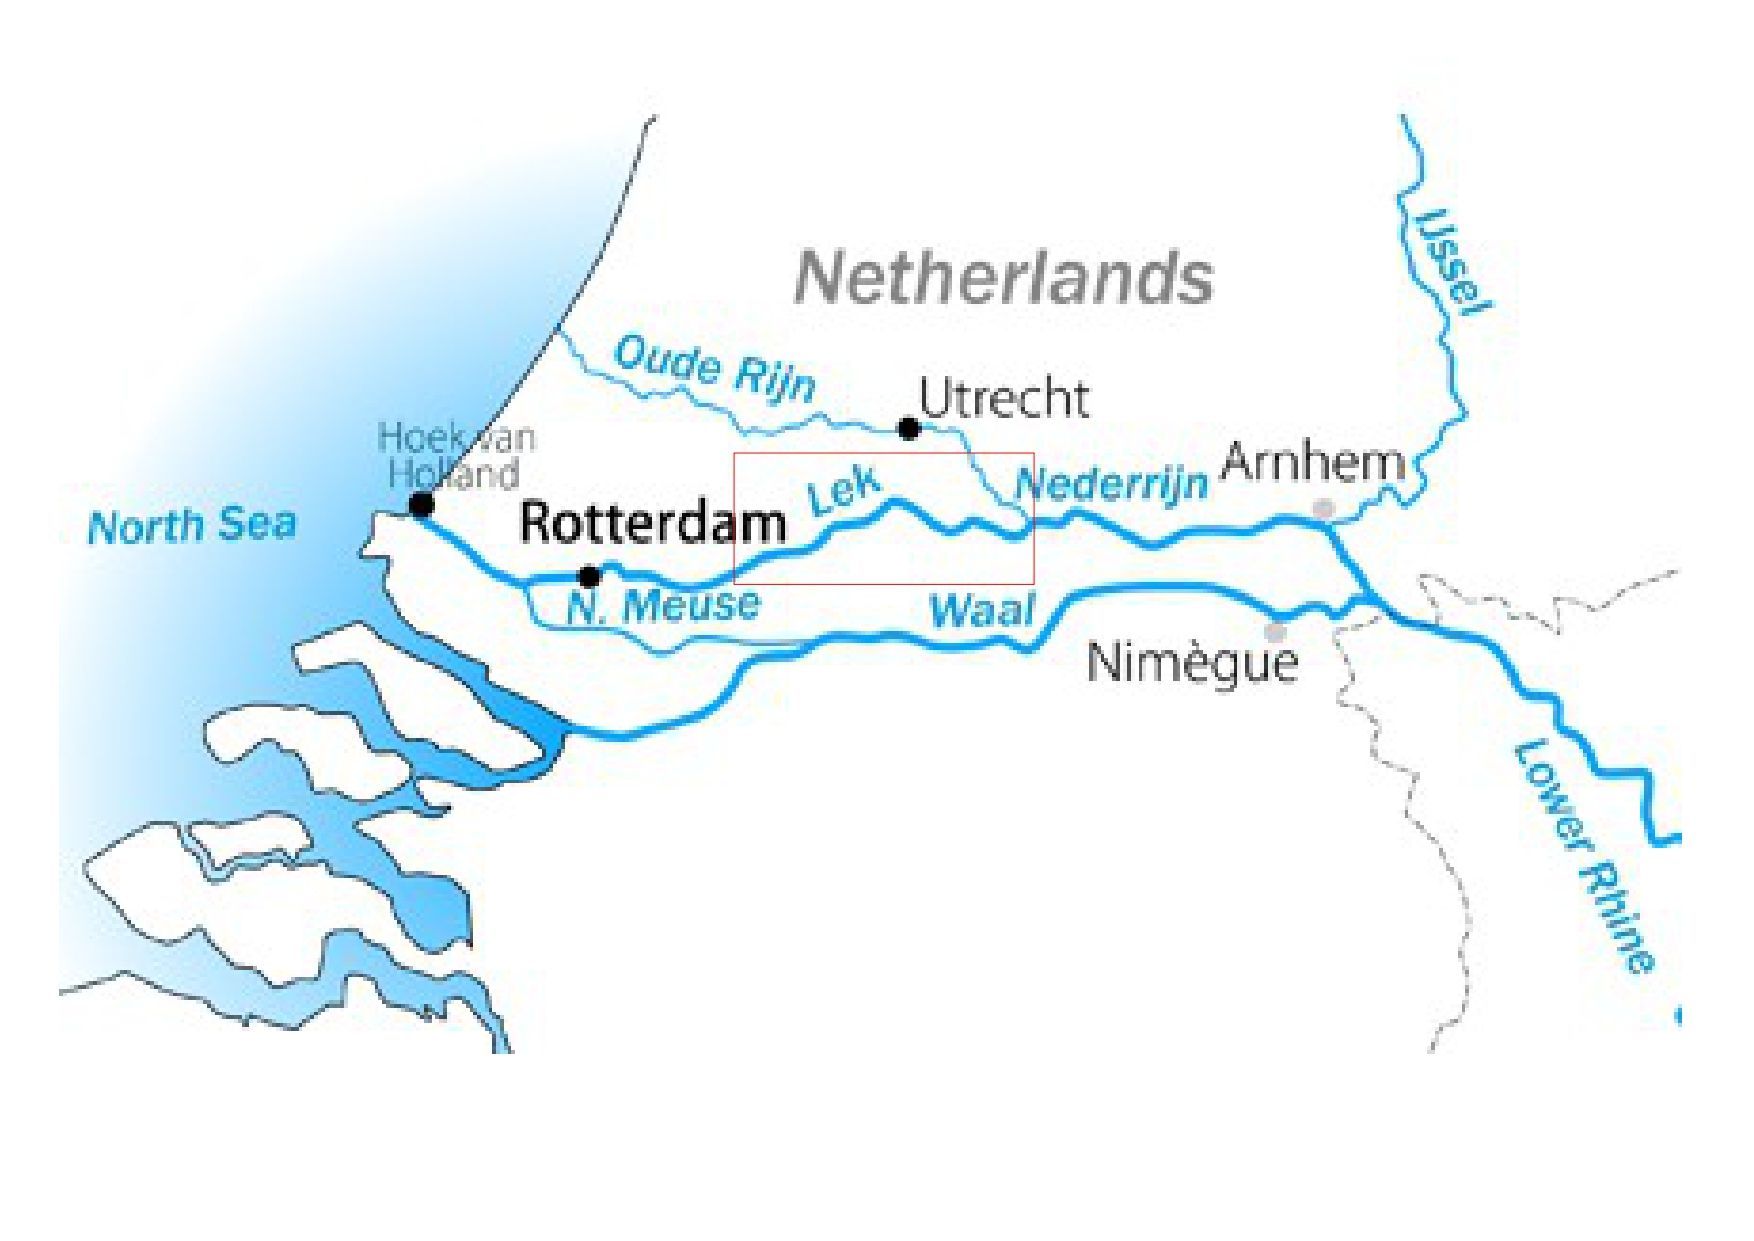 Rhine and Lek river